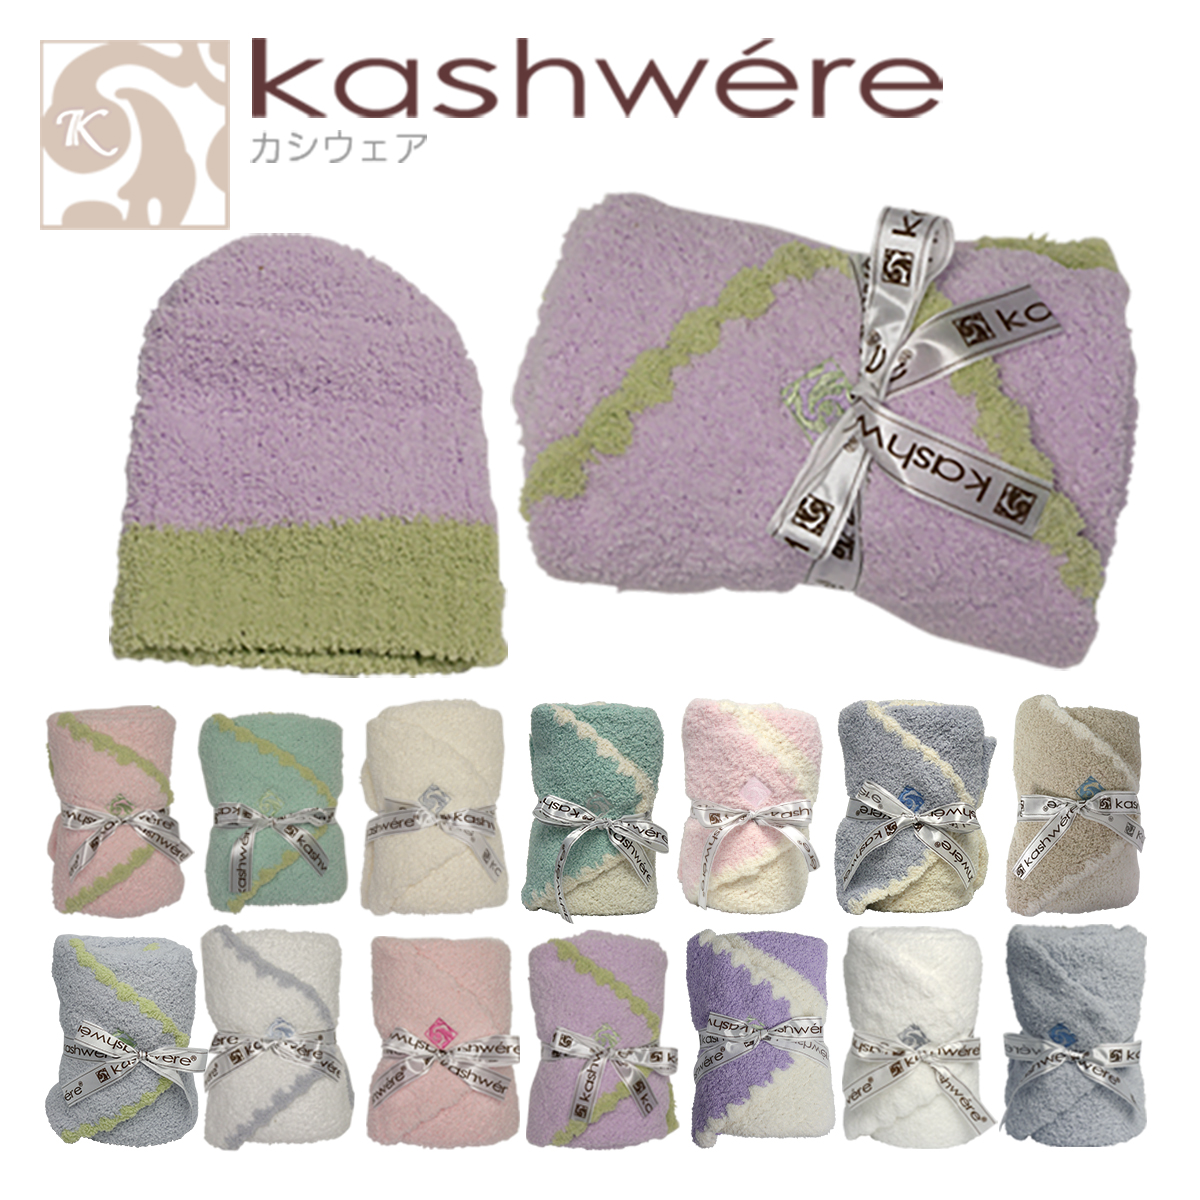 kashwere カシウエア ブランケット ベビーブランケット ＆キャップ Baby blanket & cap 選べる14カラー ギフト可 カシウェア